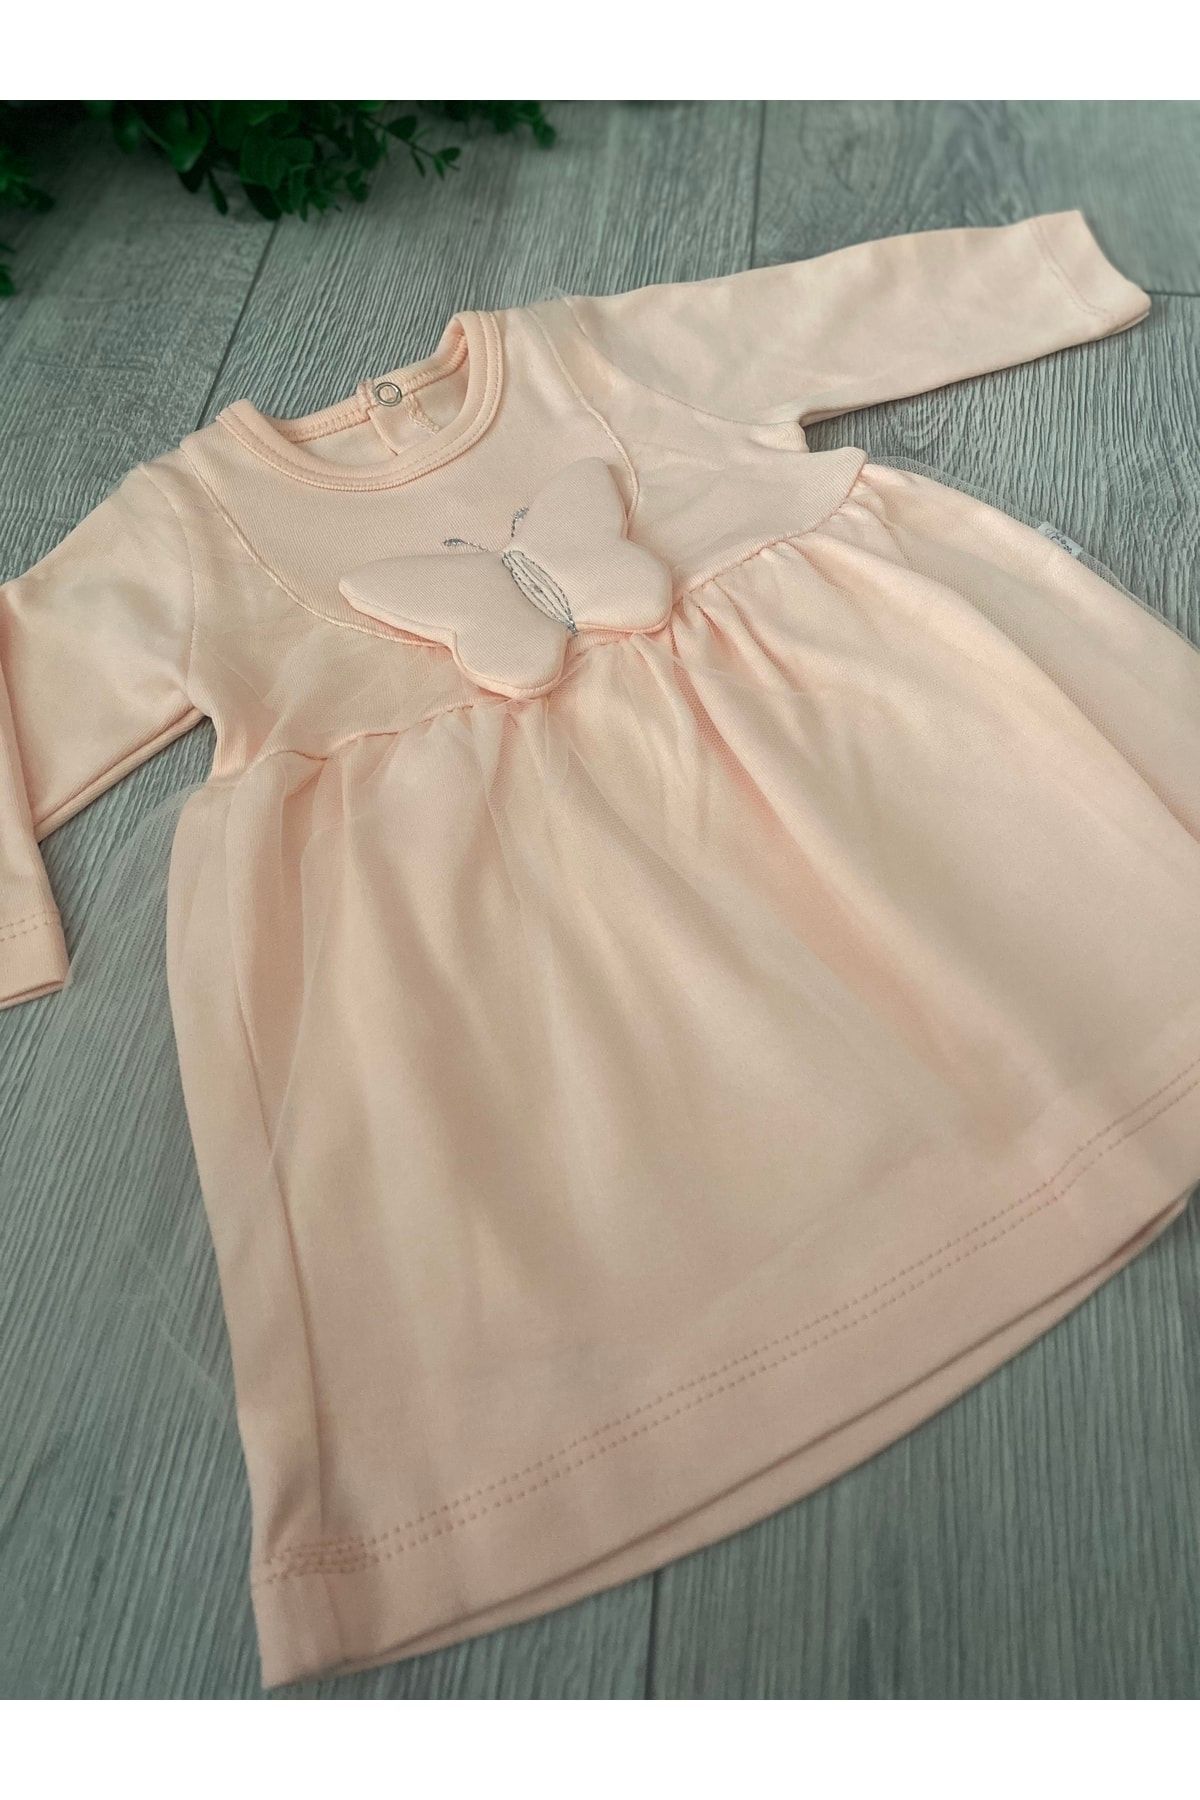 Nonna Baby Kelebek Detay Kız Bebek Elbise